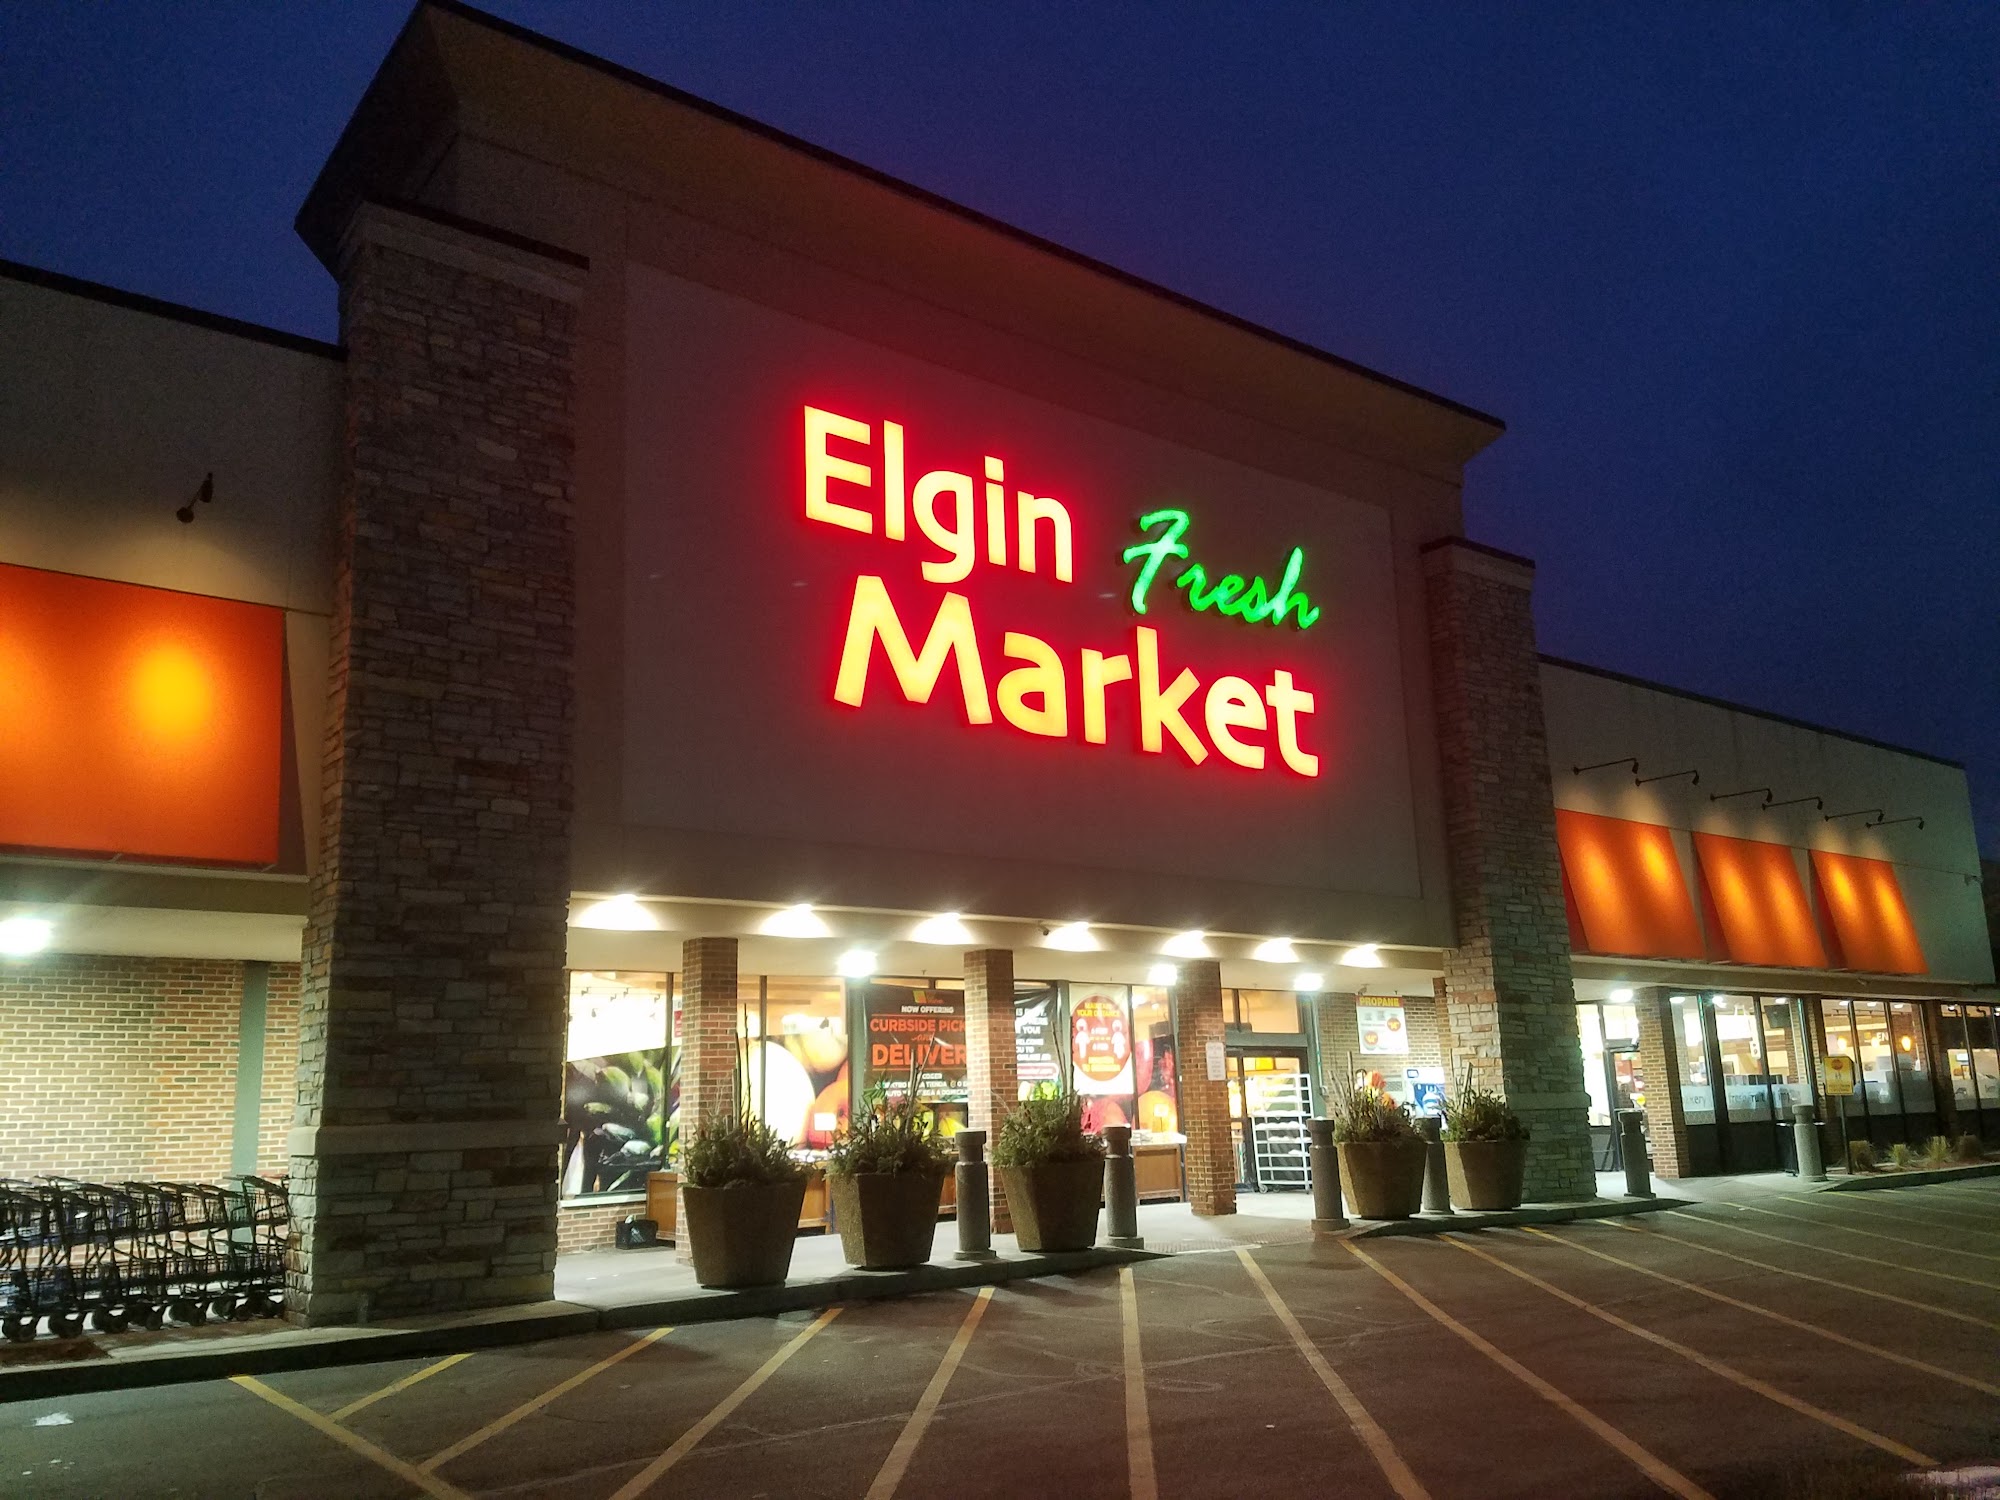 Elgin Fresh Market